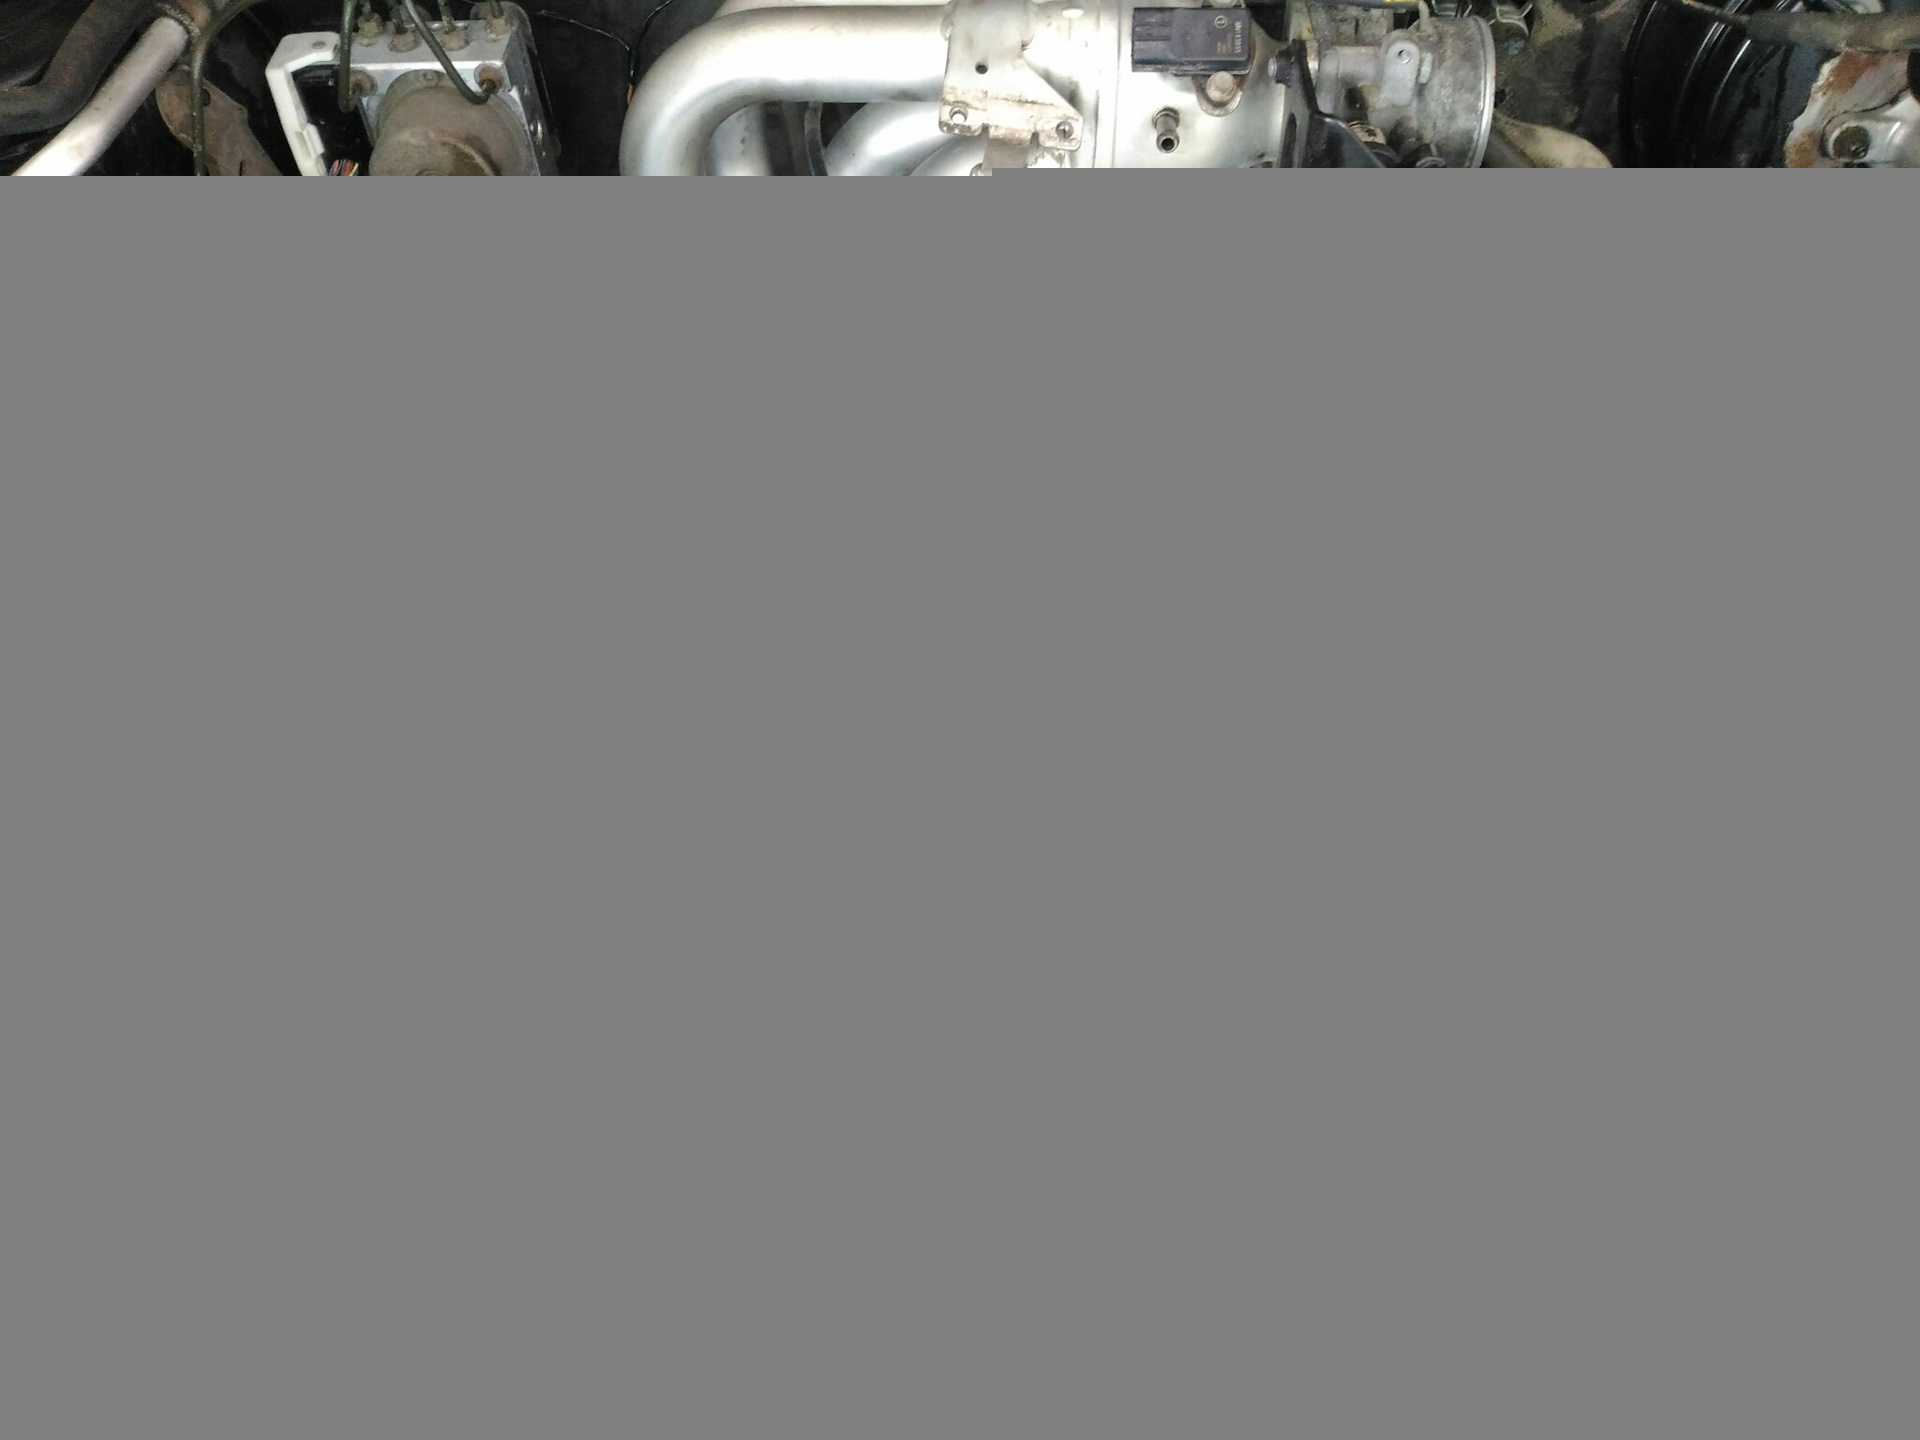 Двигатель лансер 9 1.6 л. устройство грм, технические характеристики мотора